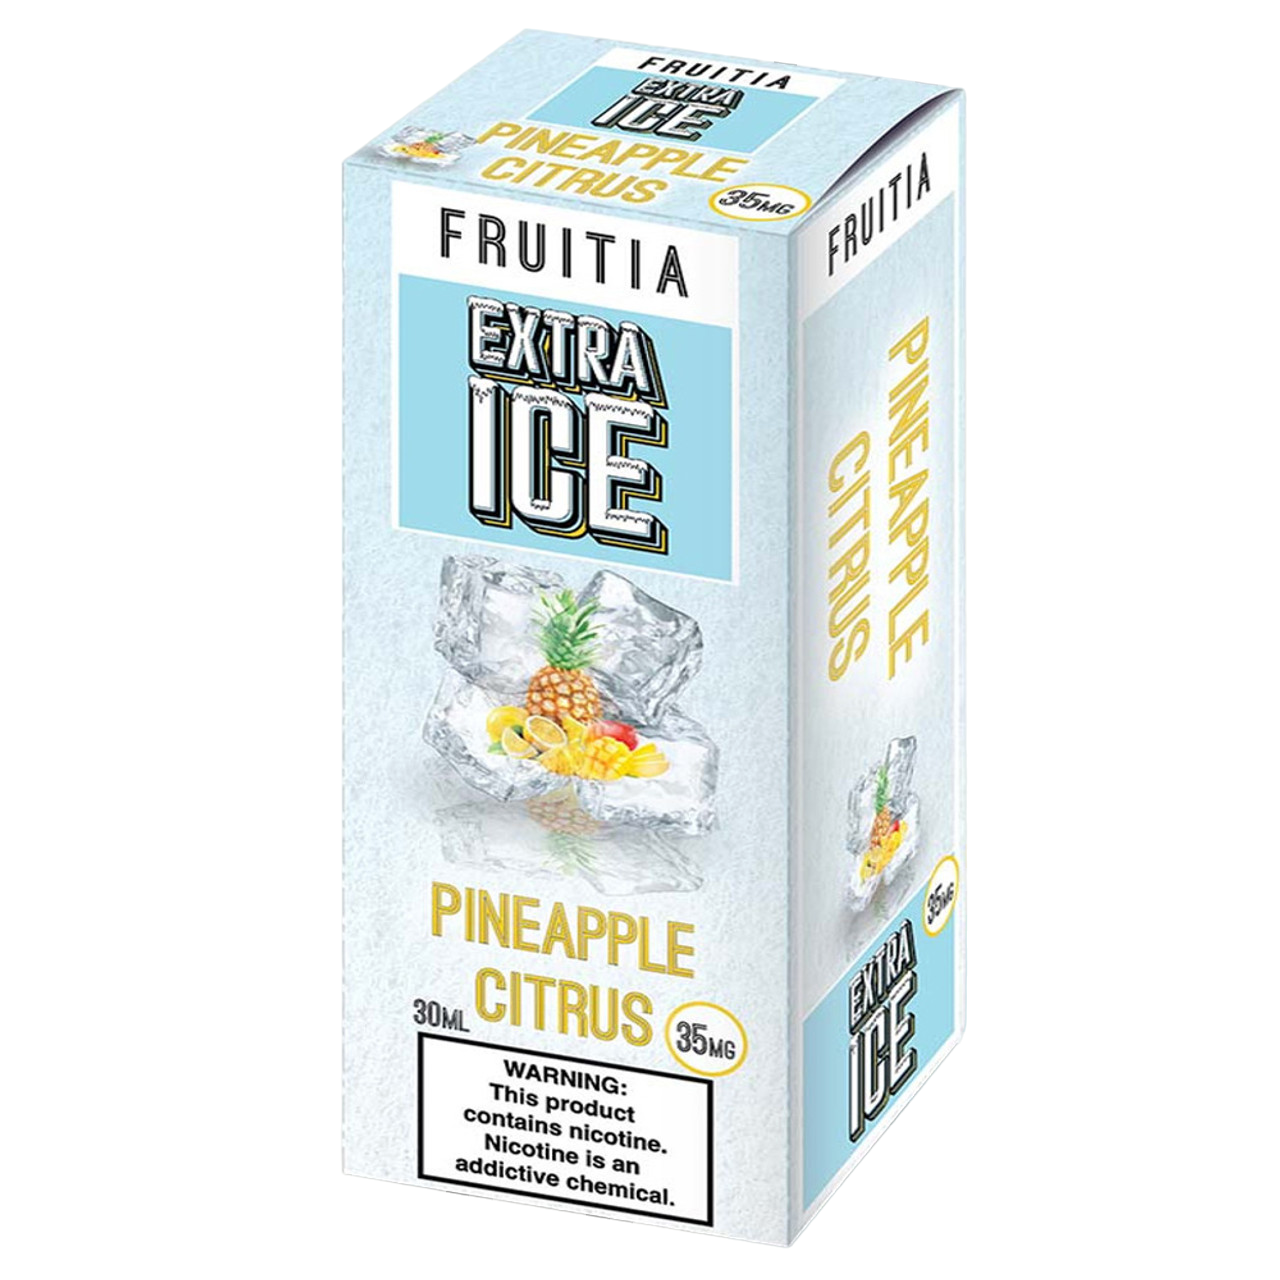 Fruitia Extra Ice Nicotine Salt E-Liquid 30ML - Pineapple Citrus